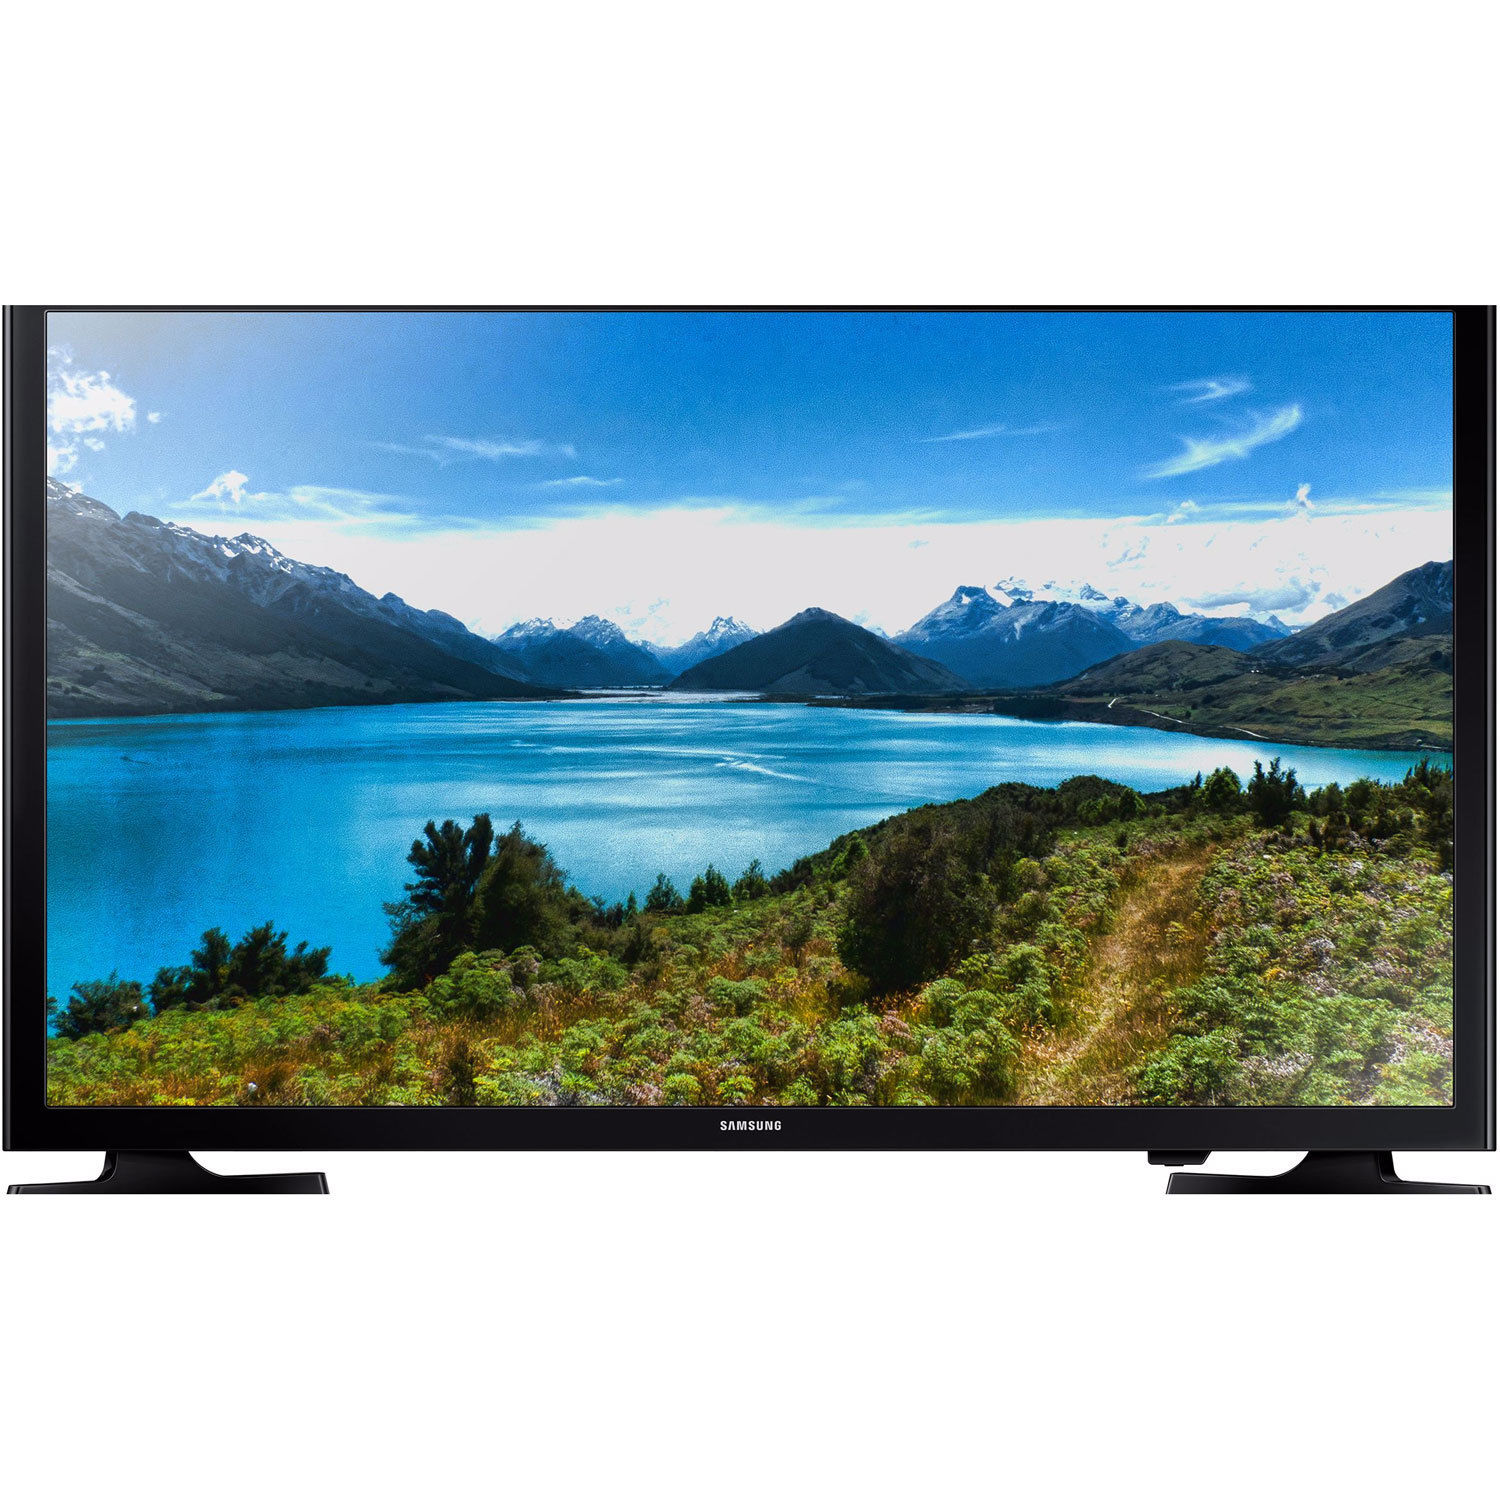 SAMSUNG UN32J4500 32" SMART 720p LED HDTV